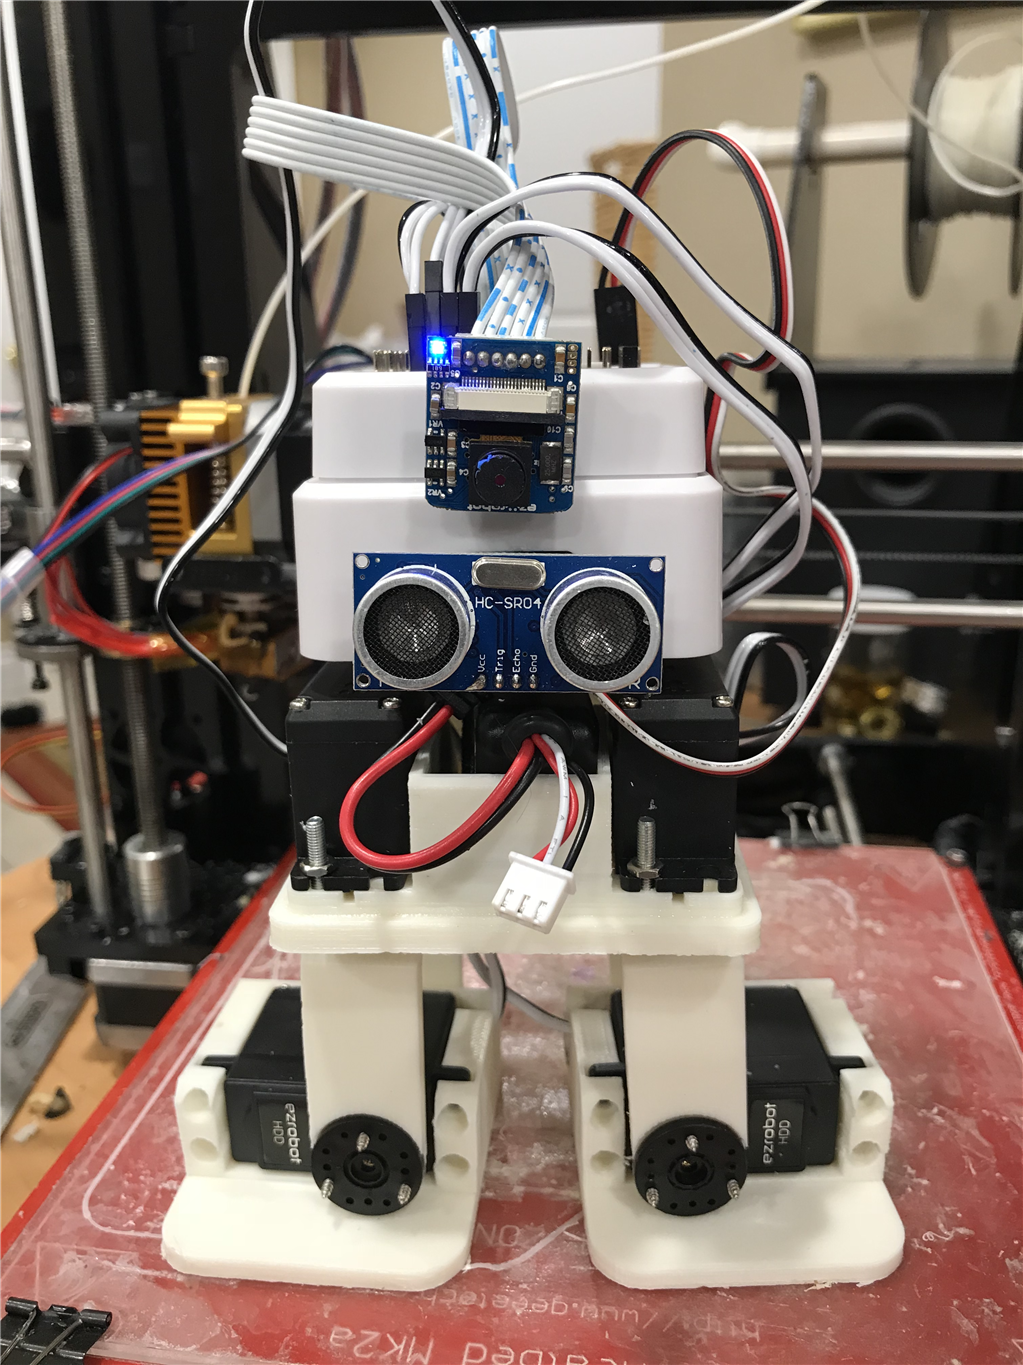 Nink's Development Kit Robot